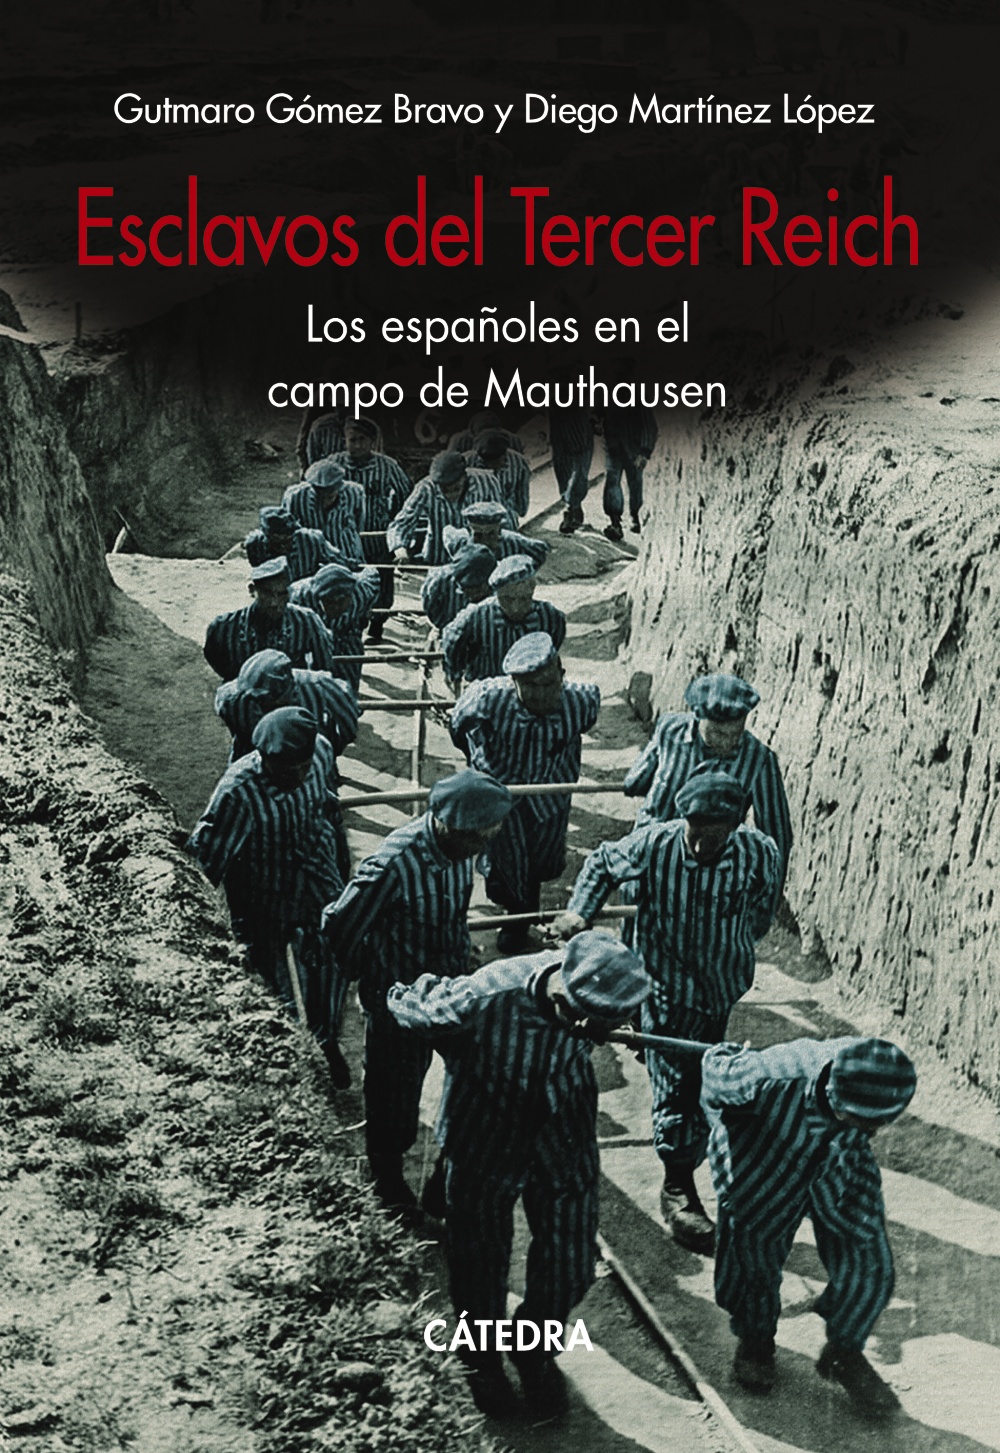 Esclavos del III Reich. Los españoles en el campo de Mauthausen